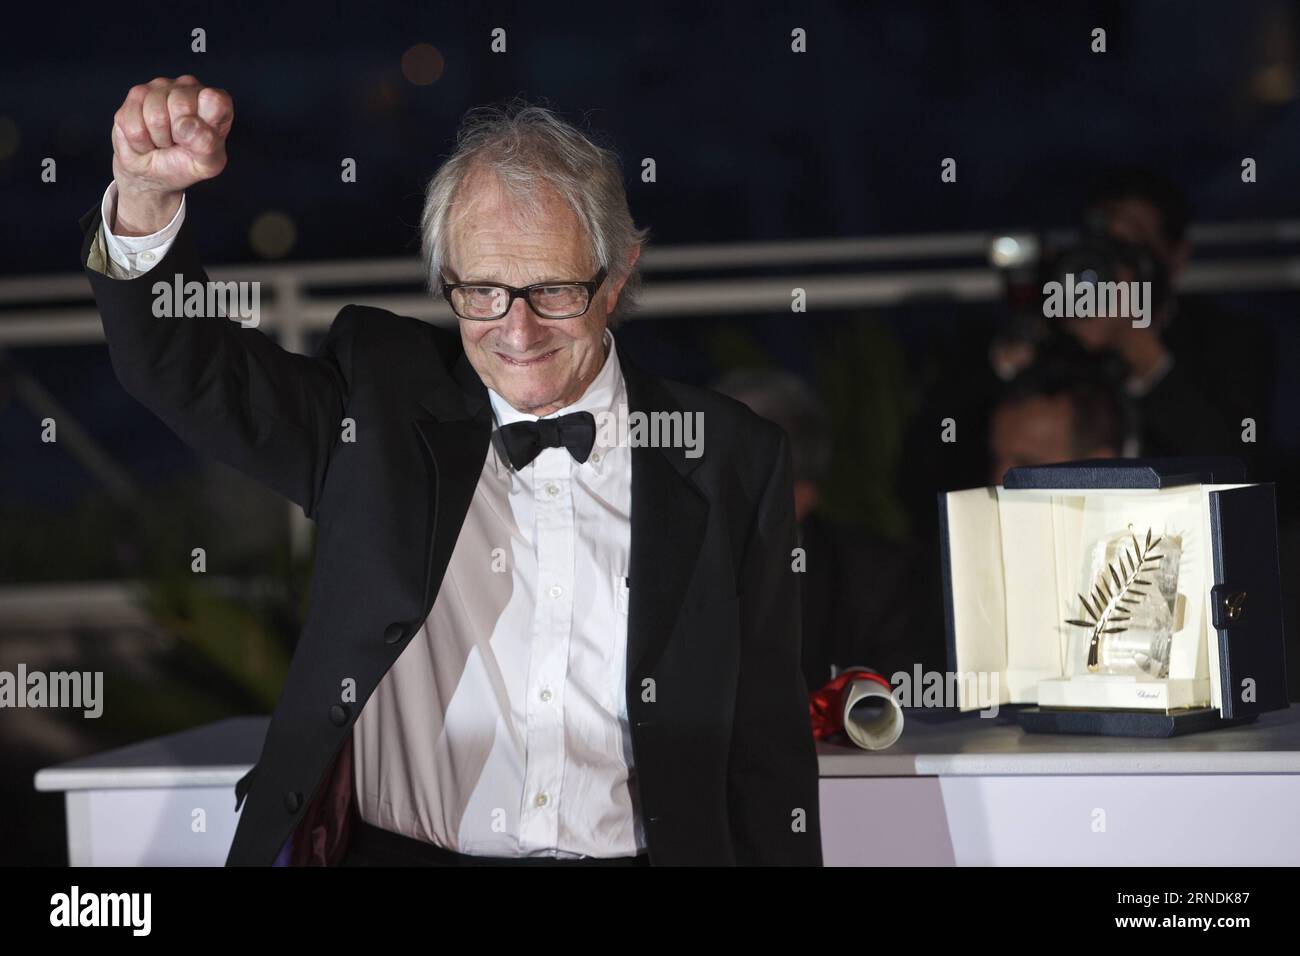 69. Festival de Cannes : Preisverleihung (160522) - CANNES, 22 mai 2016 -- le réalisateur britannique Ken Loach pose avec son trophée lors d'un photocall après avoir remporté la Palme d or Award pour le film I, Daniel Blake au 69e Festival de Cannes à Cannes, dans le sud de la France, le 22 mai 2016. FRANCE-CANNES-FILM FESTIVAL-AWARD-PHOTOCALL JinxYu PUBLICATIONxNOTxINxCHN 69 Festival de Cannes 160522 Cannes Mai 22 2016 le réalisateur britannique Ken Loach pose avec son Trophée lors d'une séance photo après avoir remporté la Palme D or Award pour le film I Daniel Blake AU 69e Festival de Cannes à Cannes Banque D'Images